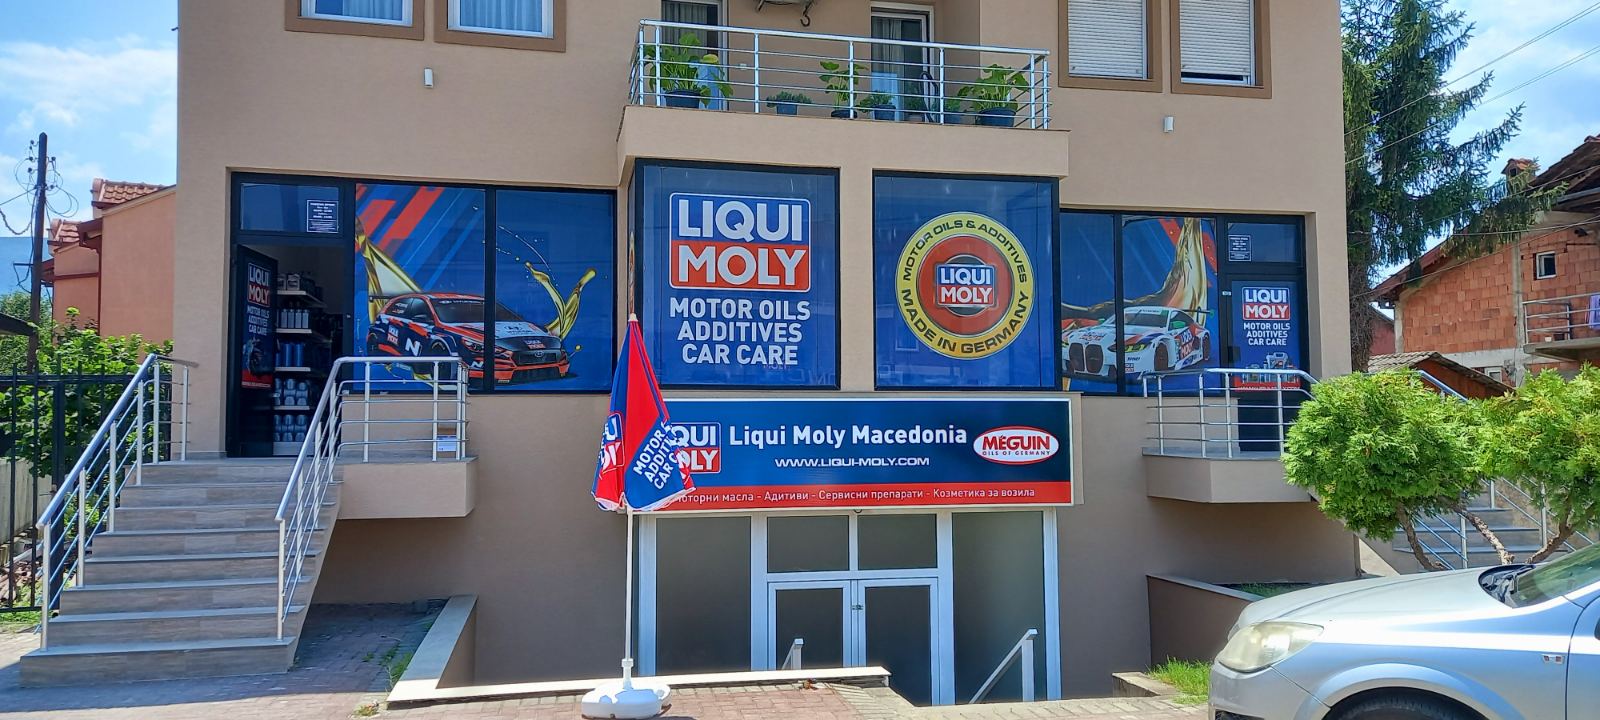 LIQUI MOLY Македонија